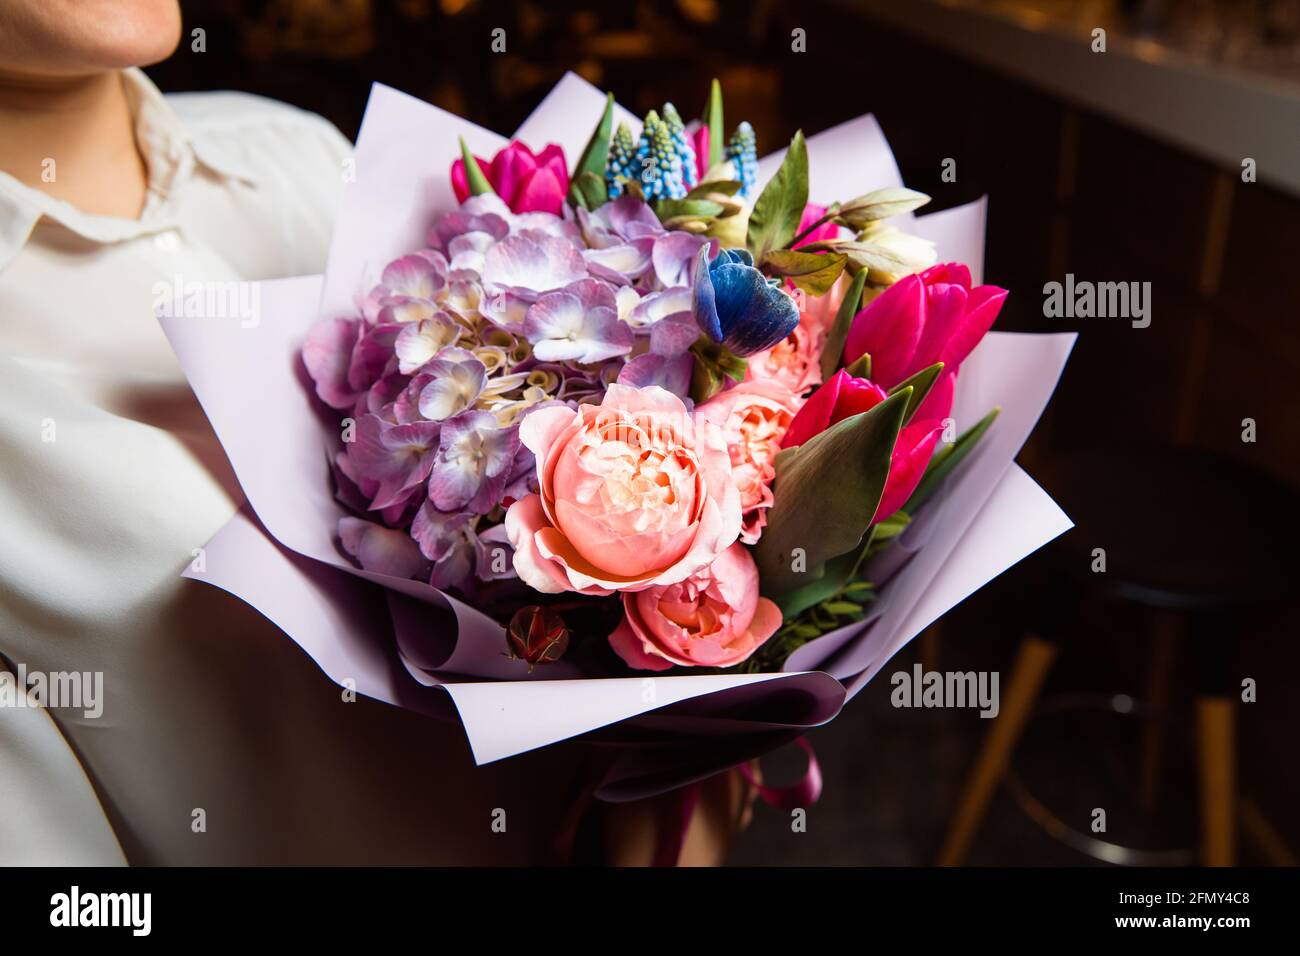 Das Mädchen hält in ihrer Hand einen herrlichen Strauß mit bunten frischen Blumen, EIN tolles Geschenk für jeden Anlass. Stockfoto